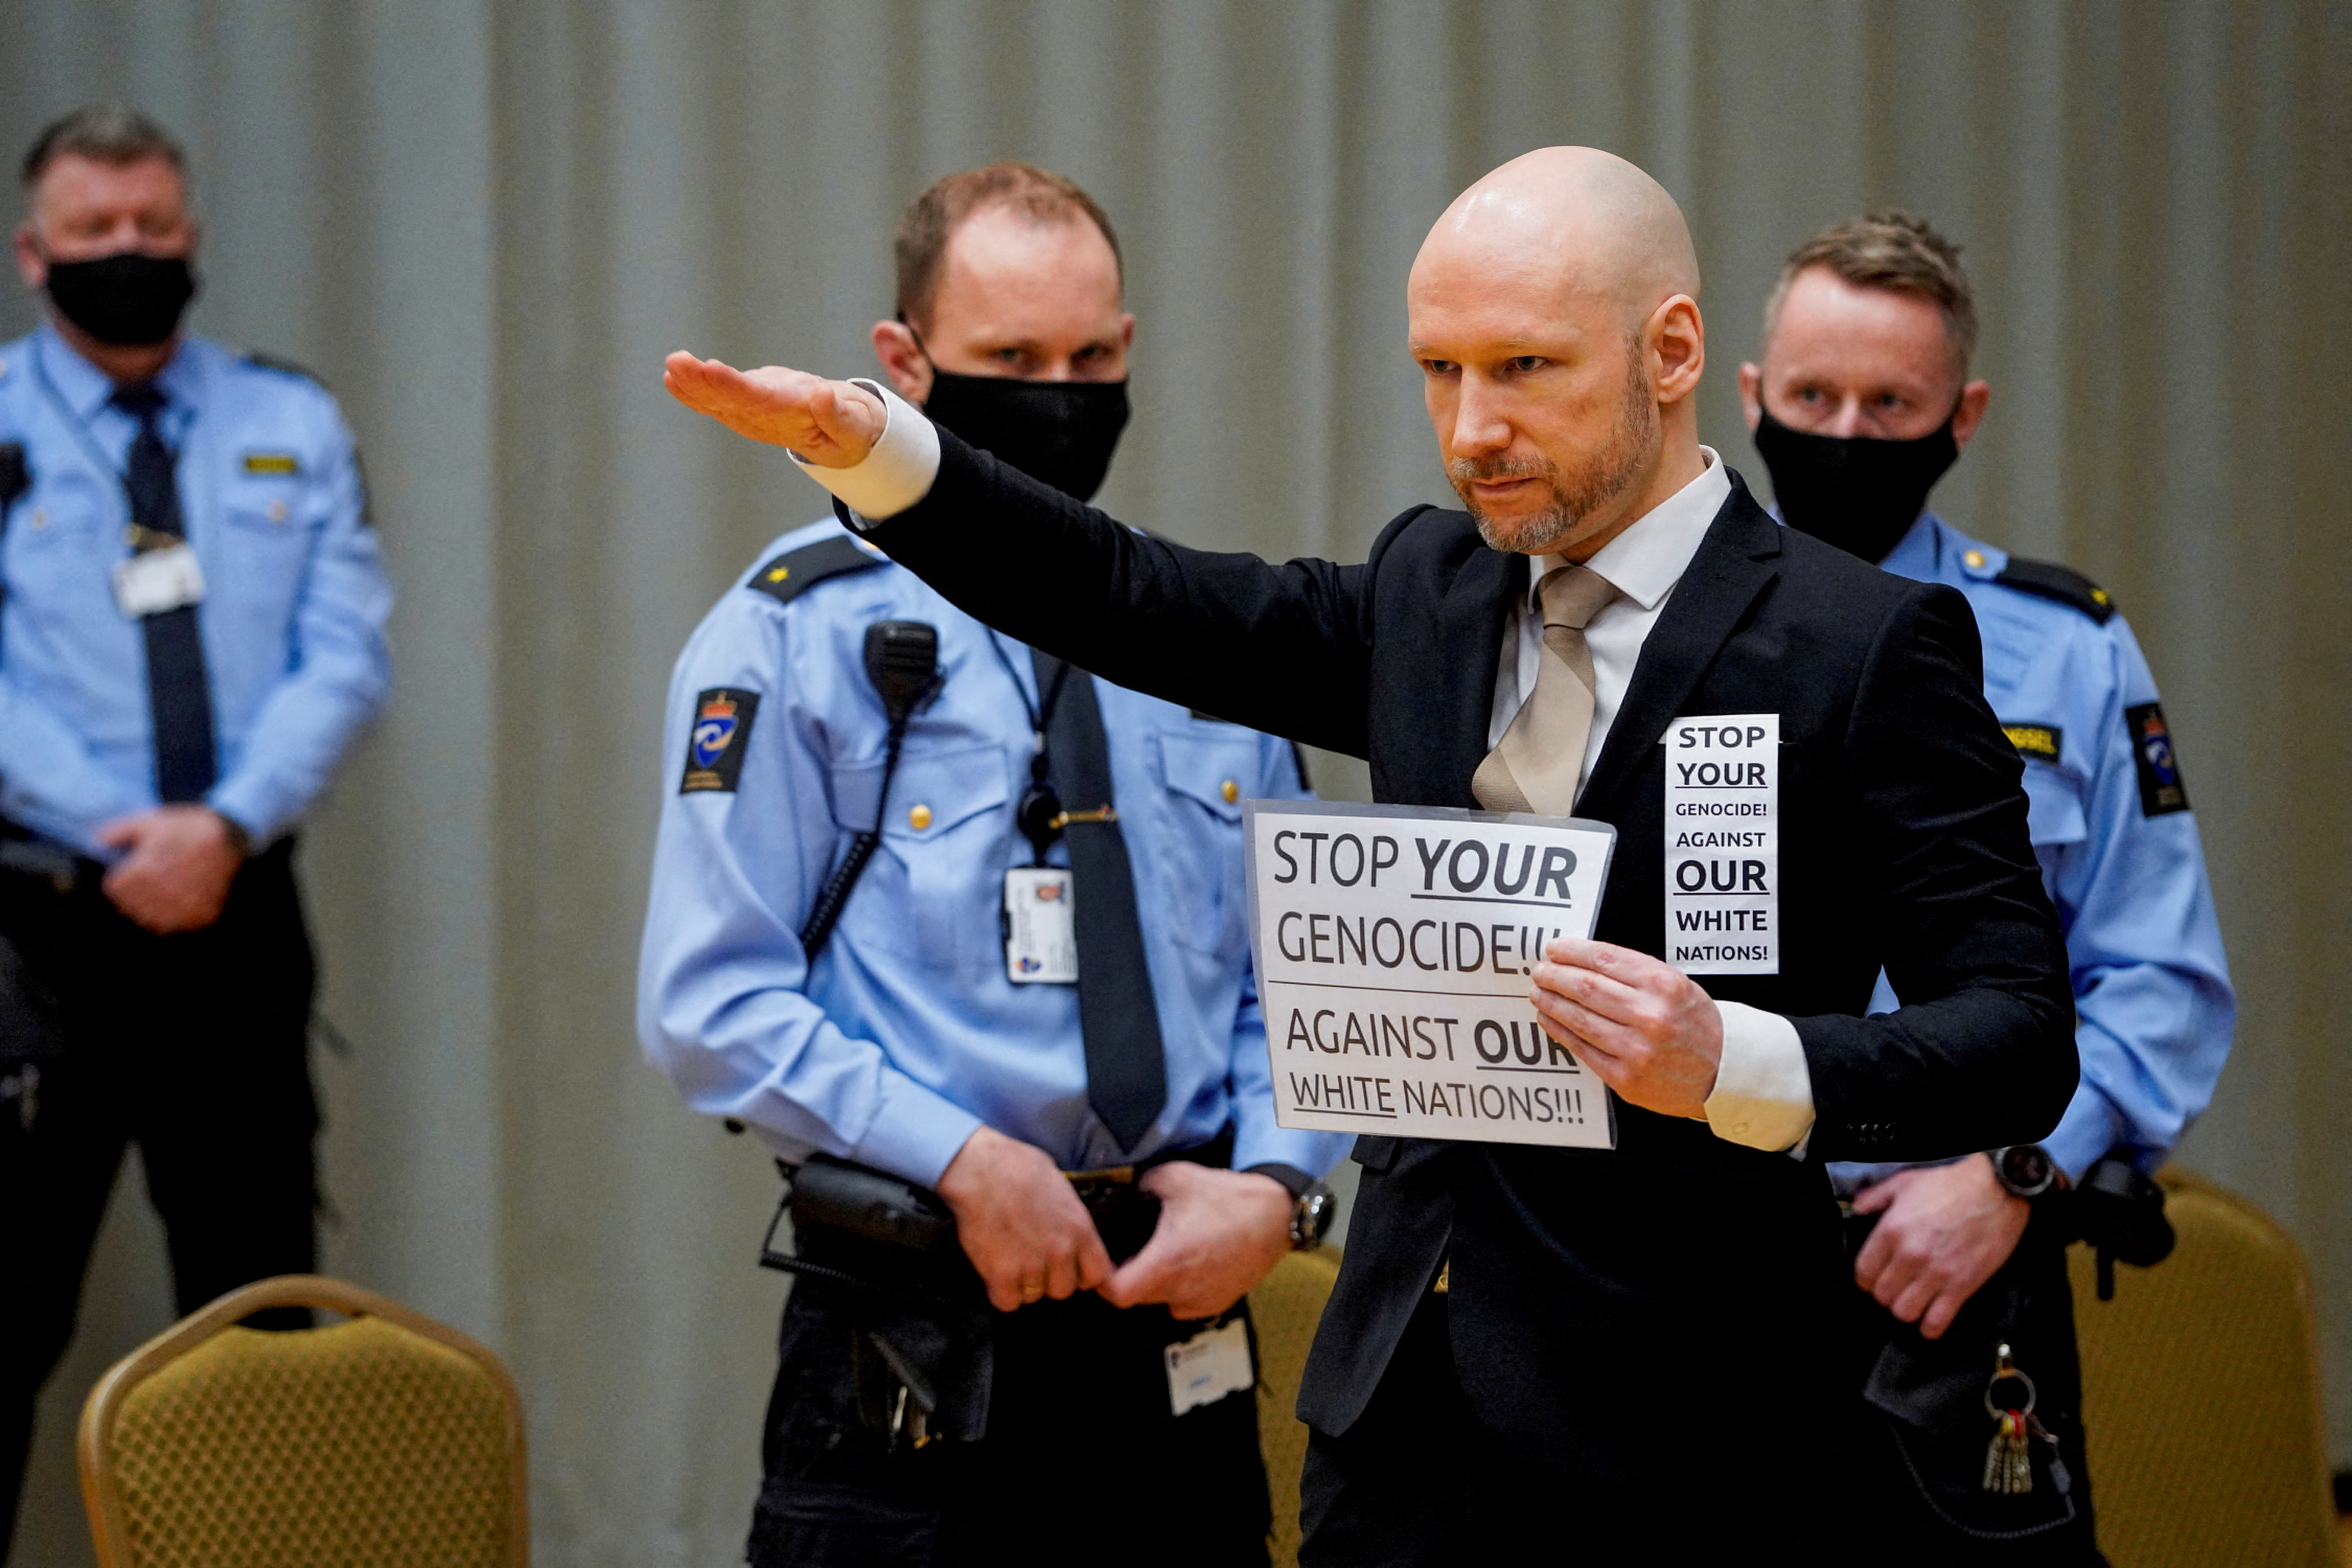 El asesino y terrorista Anders Breivik, proponente de la conspiración del marxismo cultural. El cartel dice: "Detengan su genocidio contra nuestras naciones blancas". (Reuters)